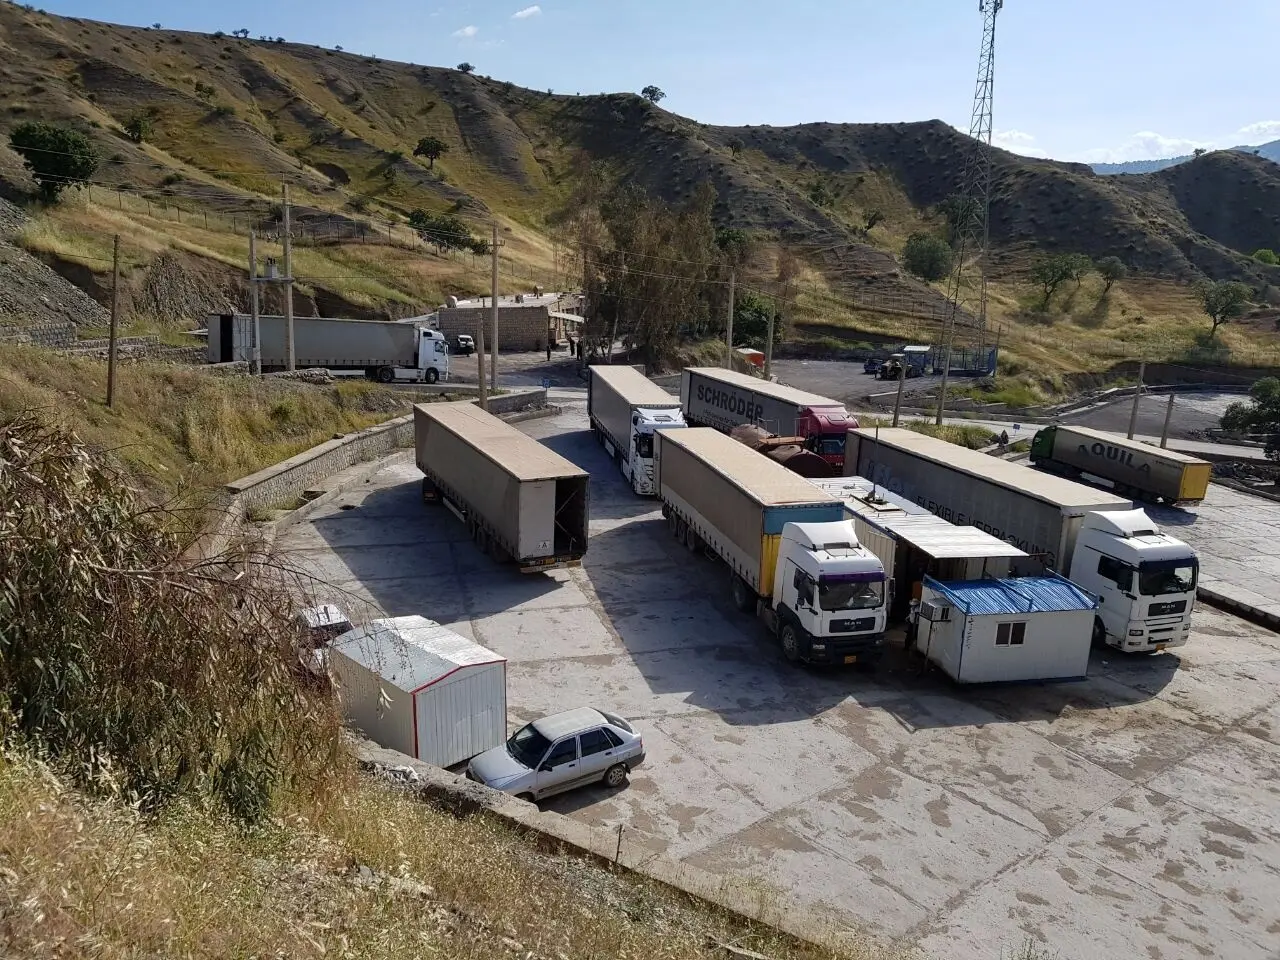 افغان‌ها مرز را بر روی کامیون‌های ایرانی بستند